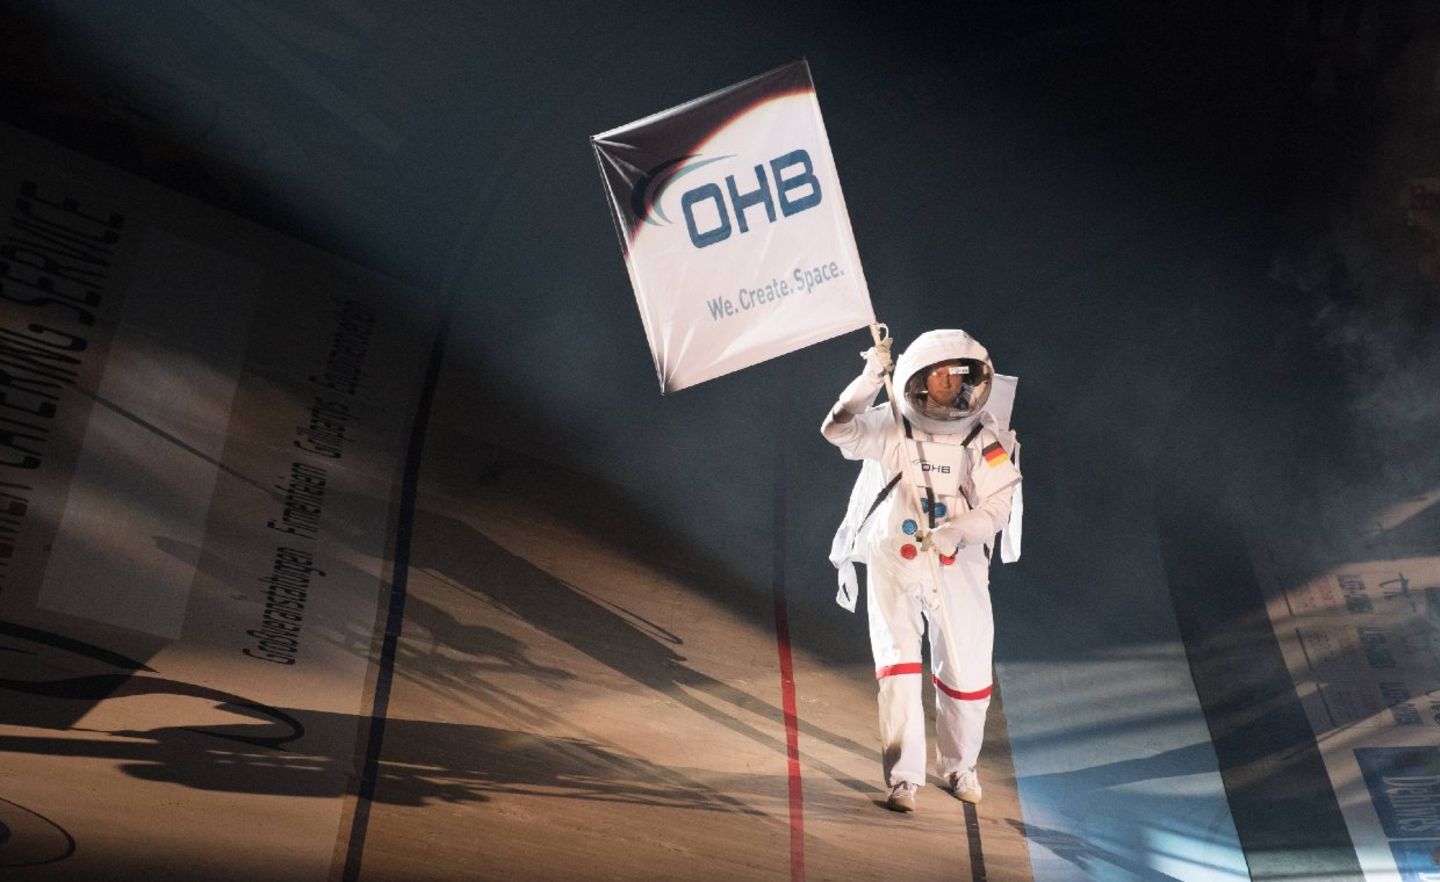 Seit 1985 ist das börsennotierte Unternehmen OHB aktiv in der Raumfahrt